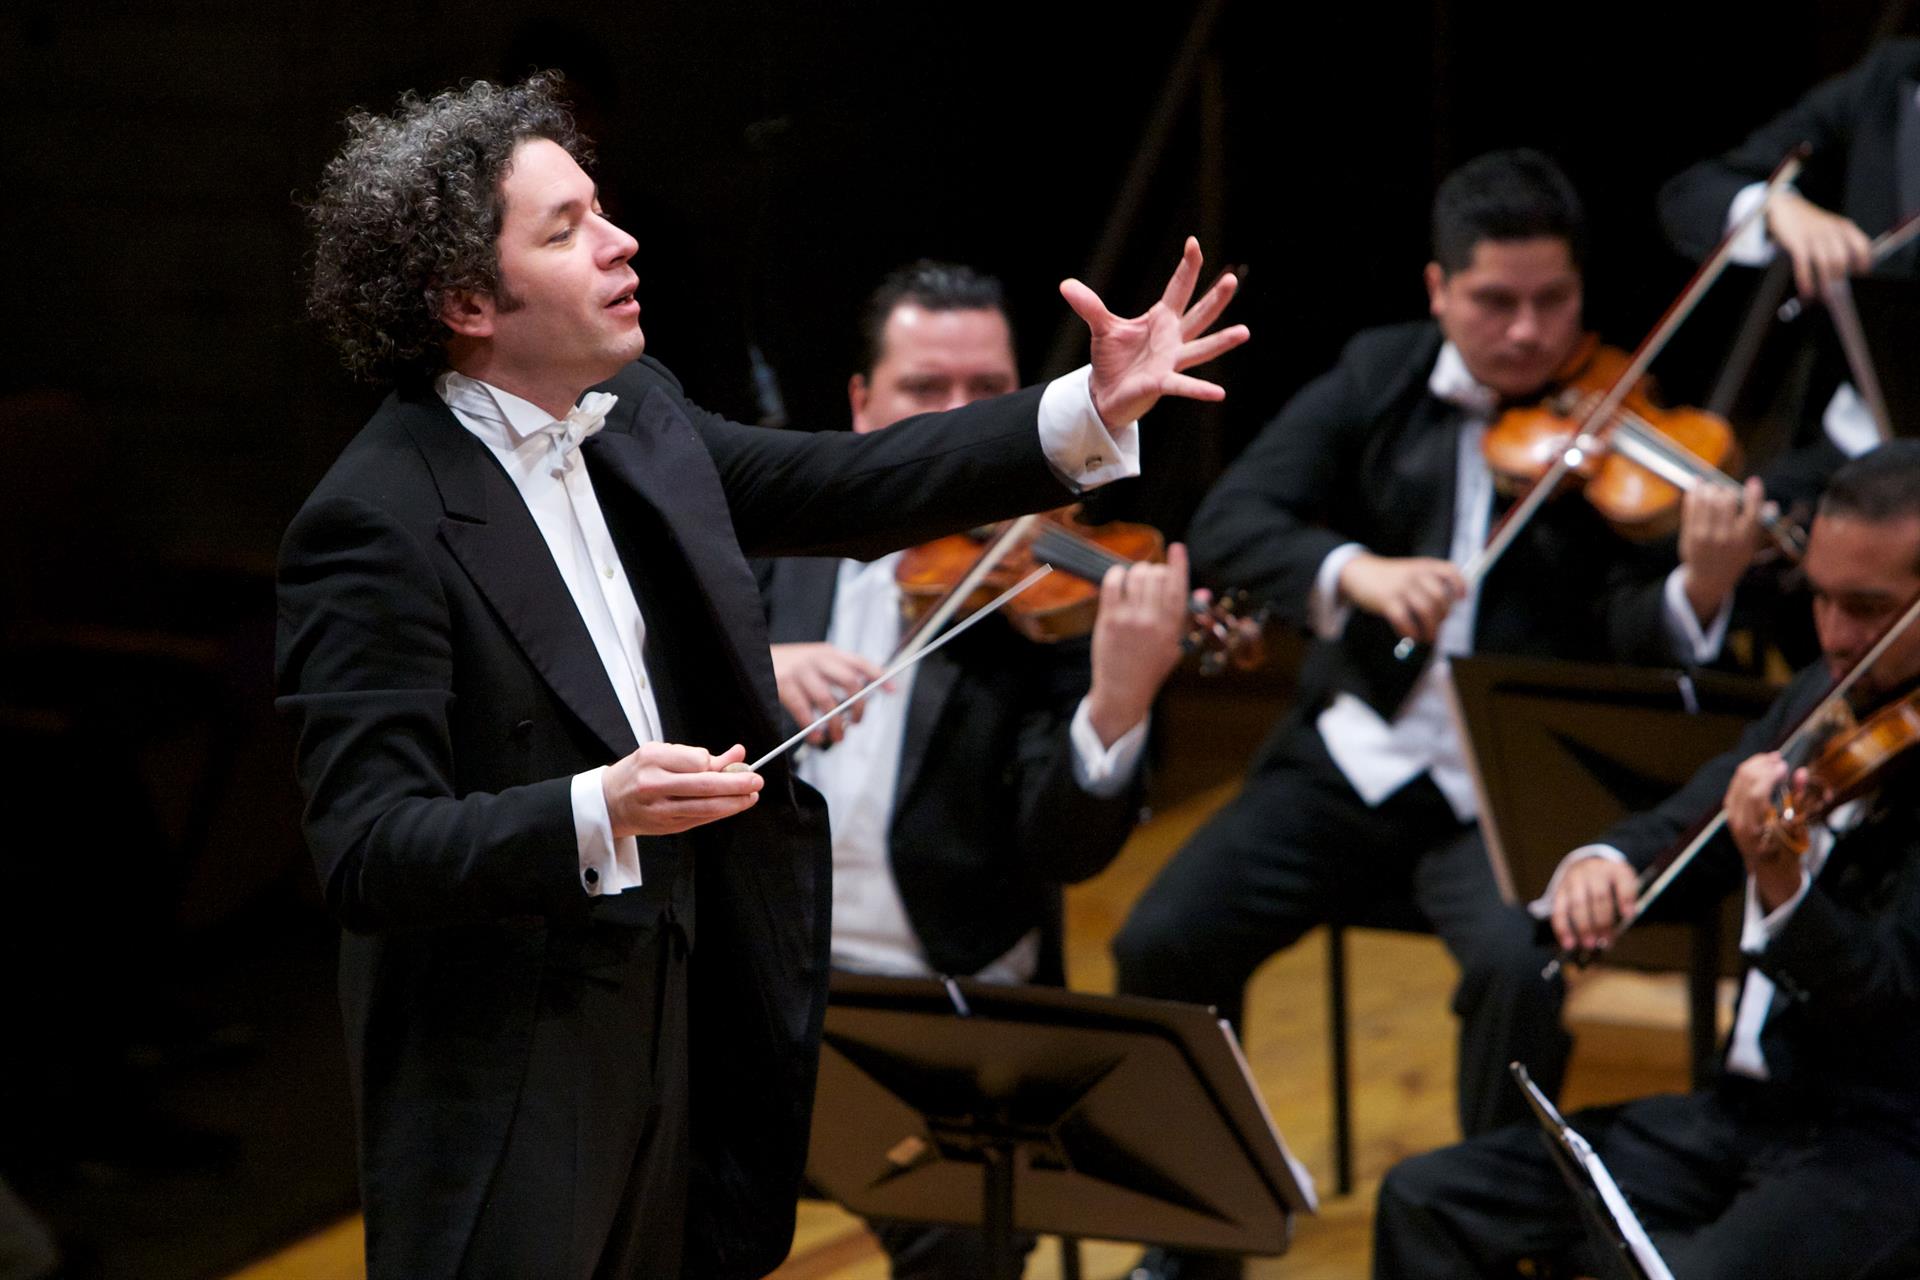 Fotografía cedida por Fundamusical donde aparece el director de orquesta venezolano, Gustavo Dudamel, mientras dirige la Orquesta Sinfónica Simón Bolívar, durante una escena del documental 